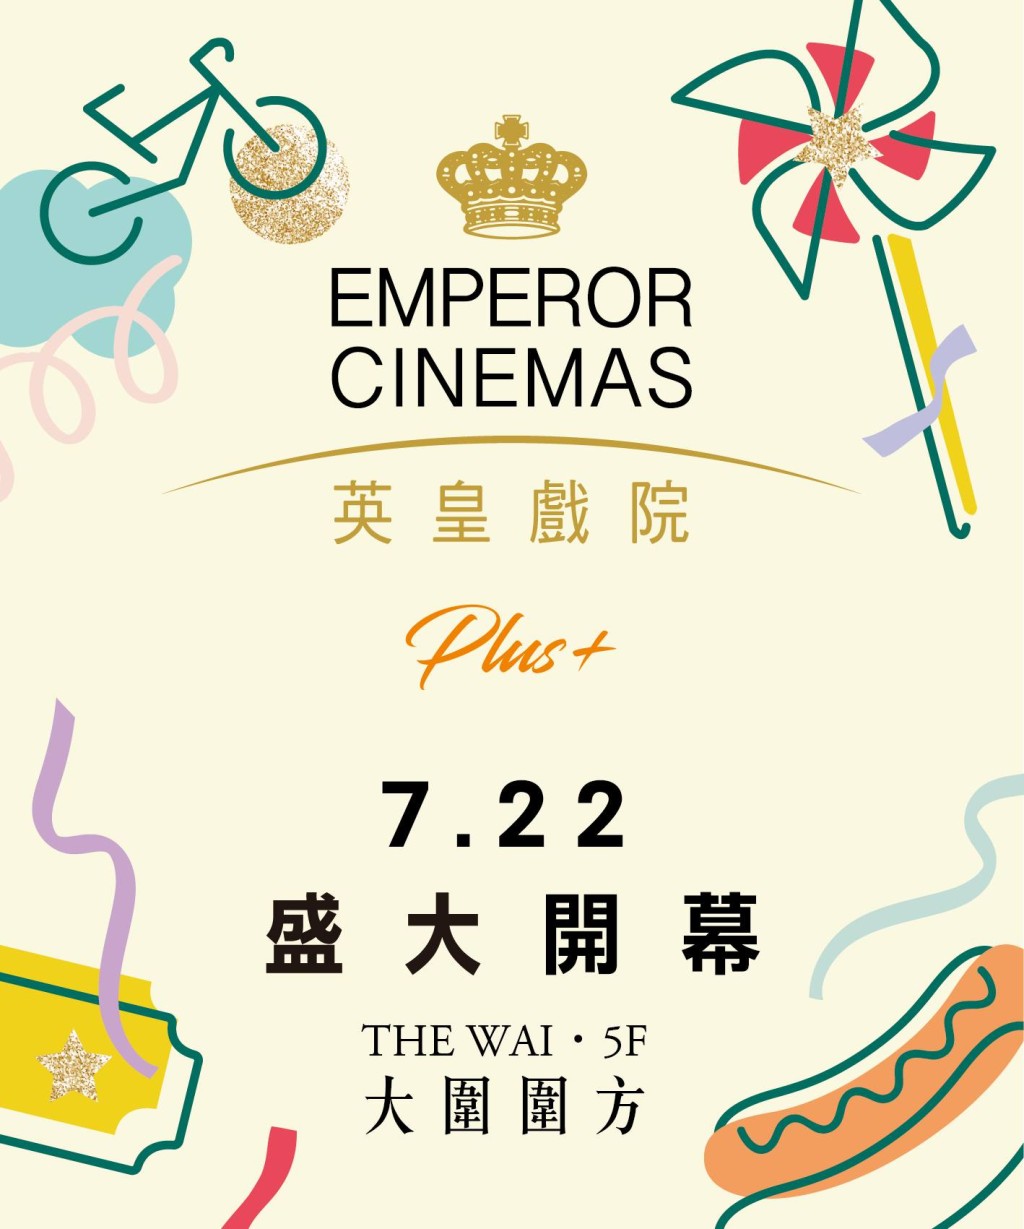 围方英皇戏院7.22开幕 (图源：FB@Emperor Cinemas 英皇戏院)